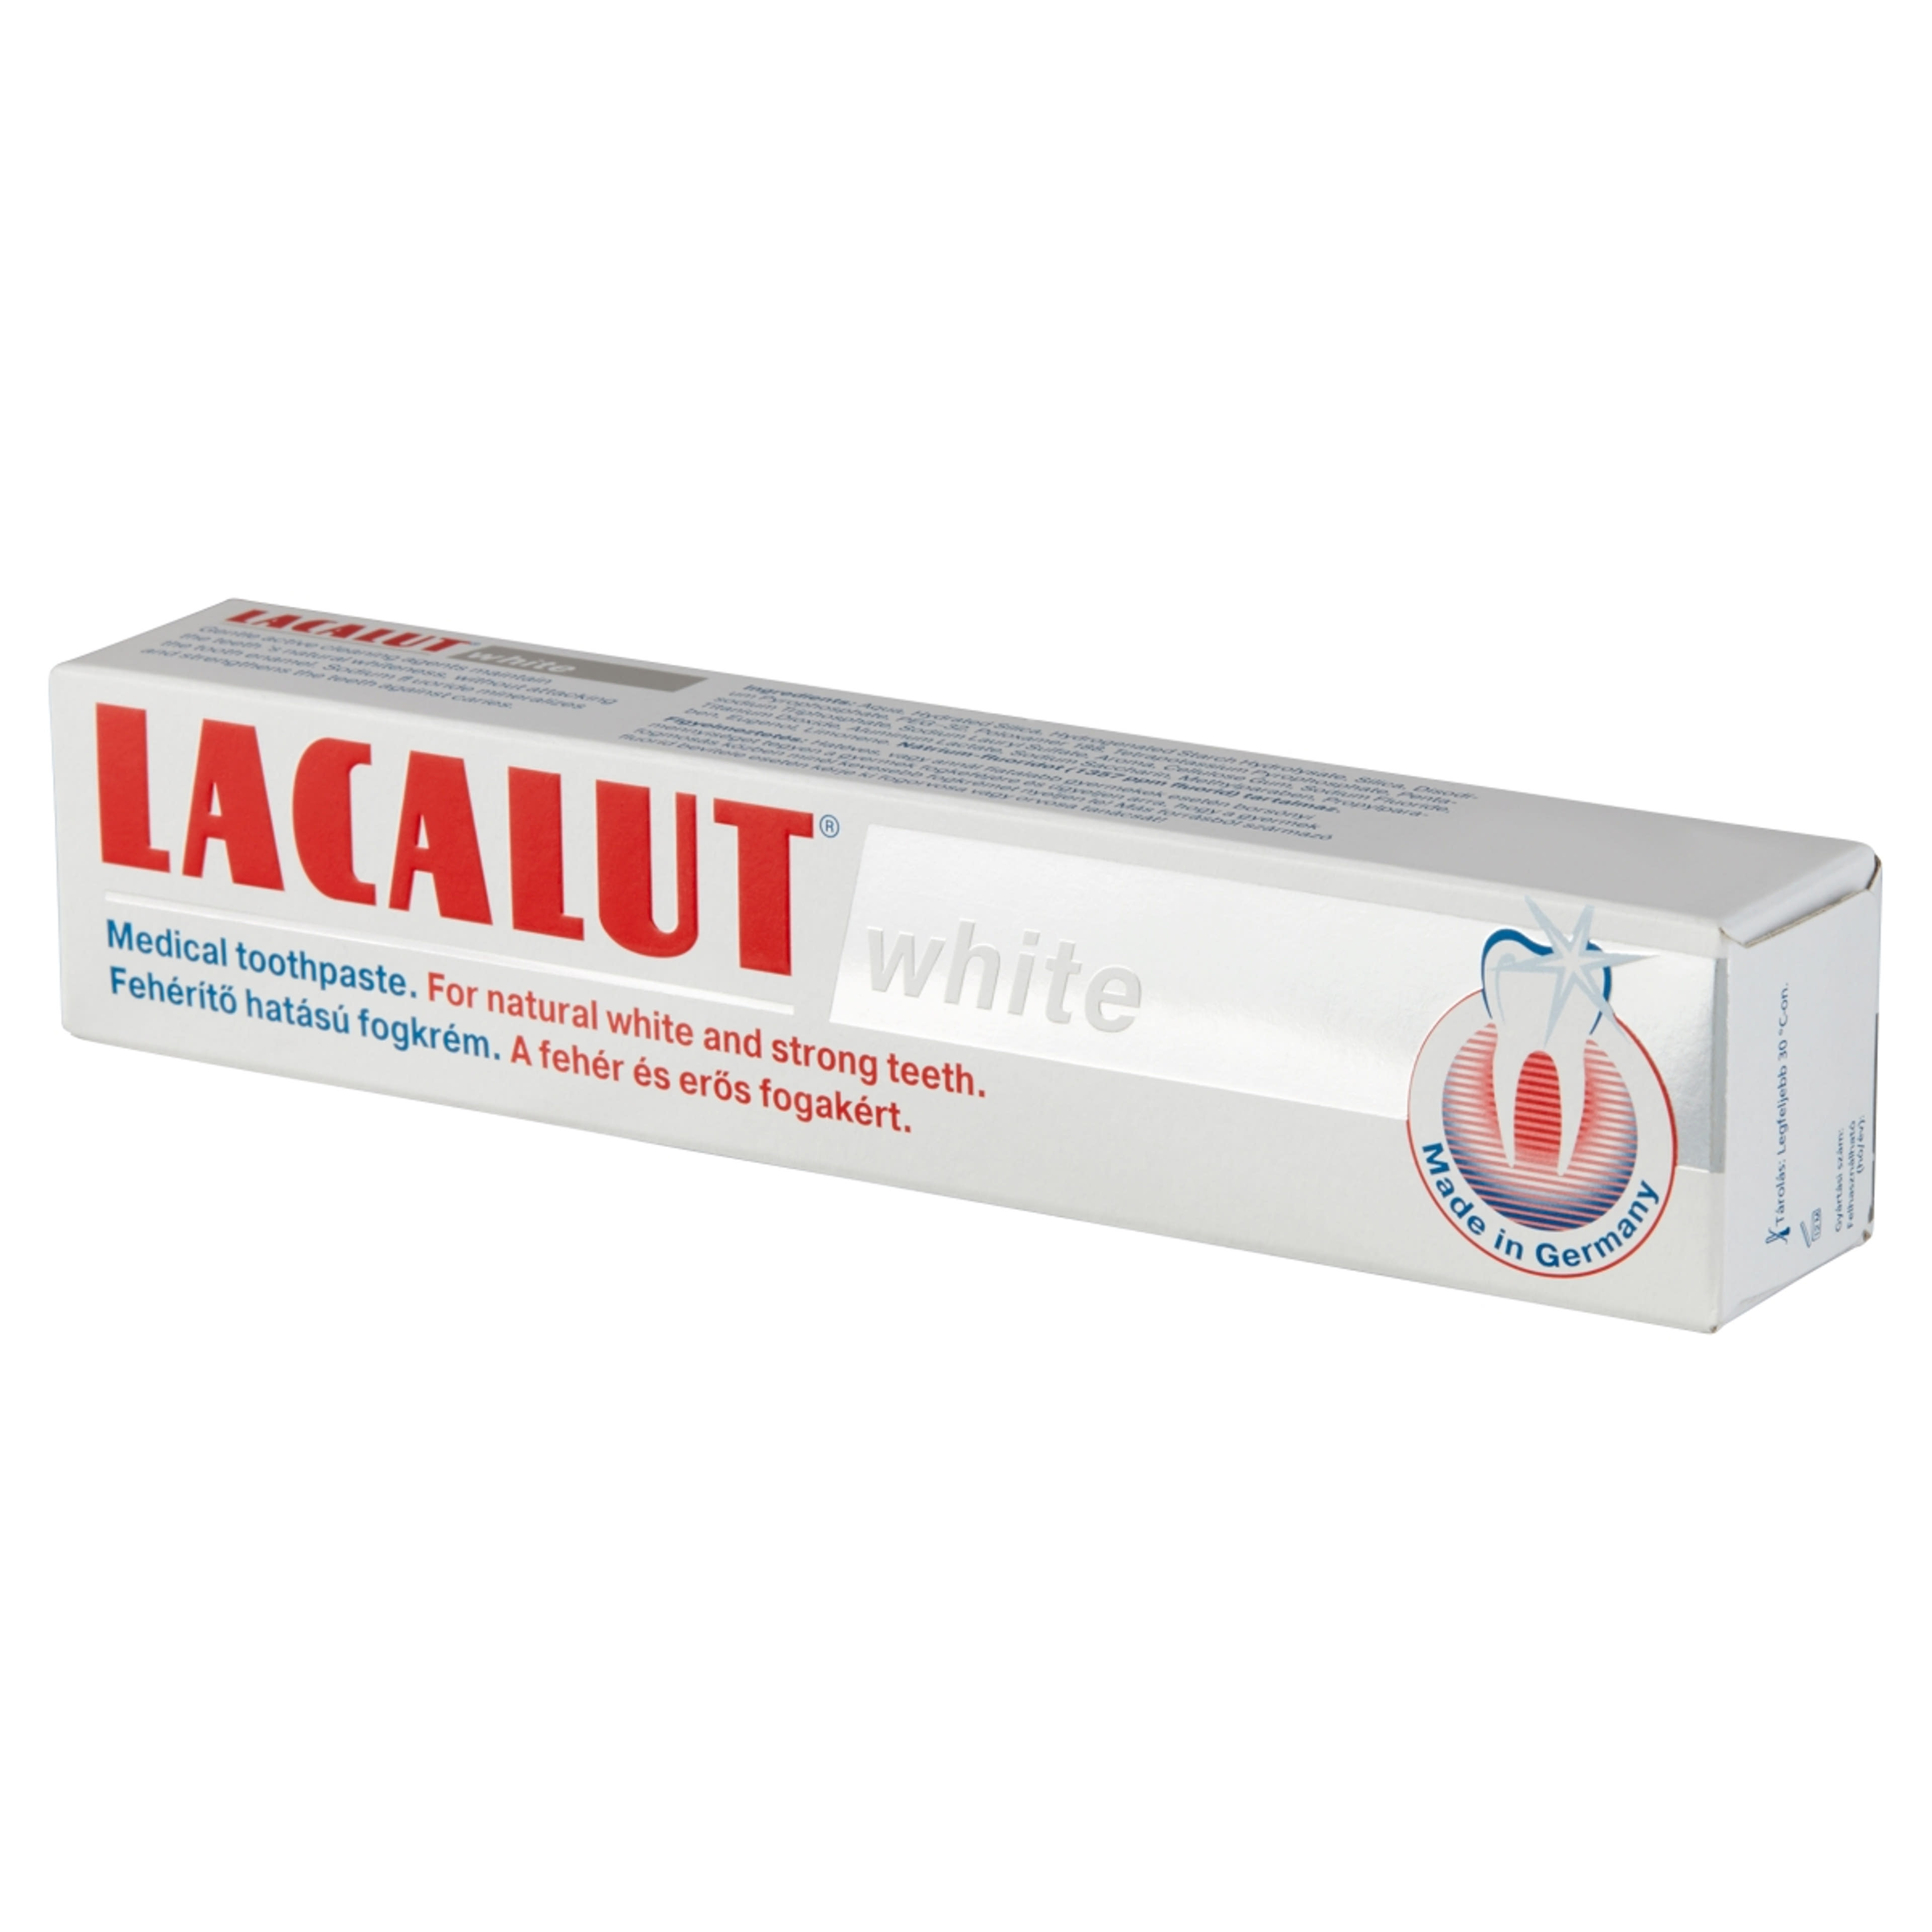 Lacalut White Fehéríto Hatású fogkrém - 75 ml-3